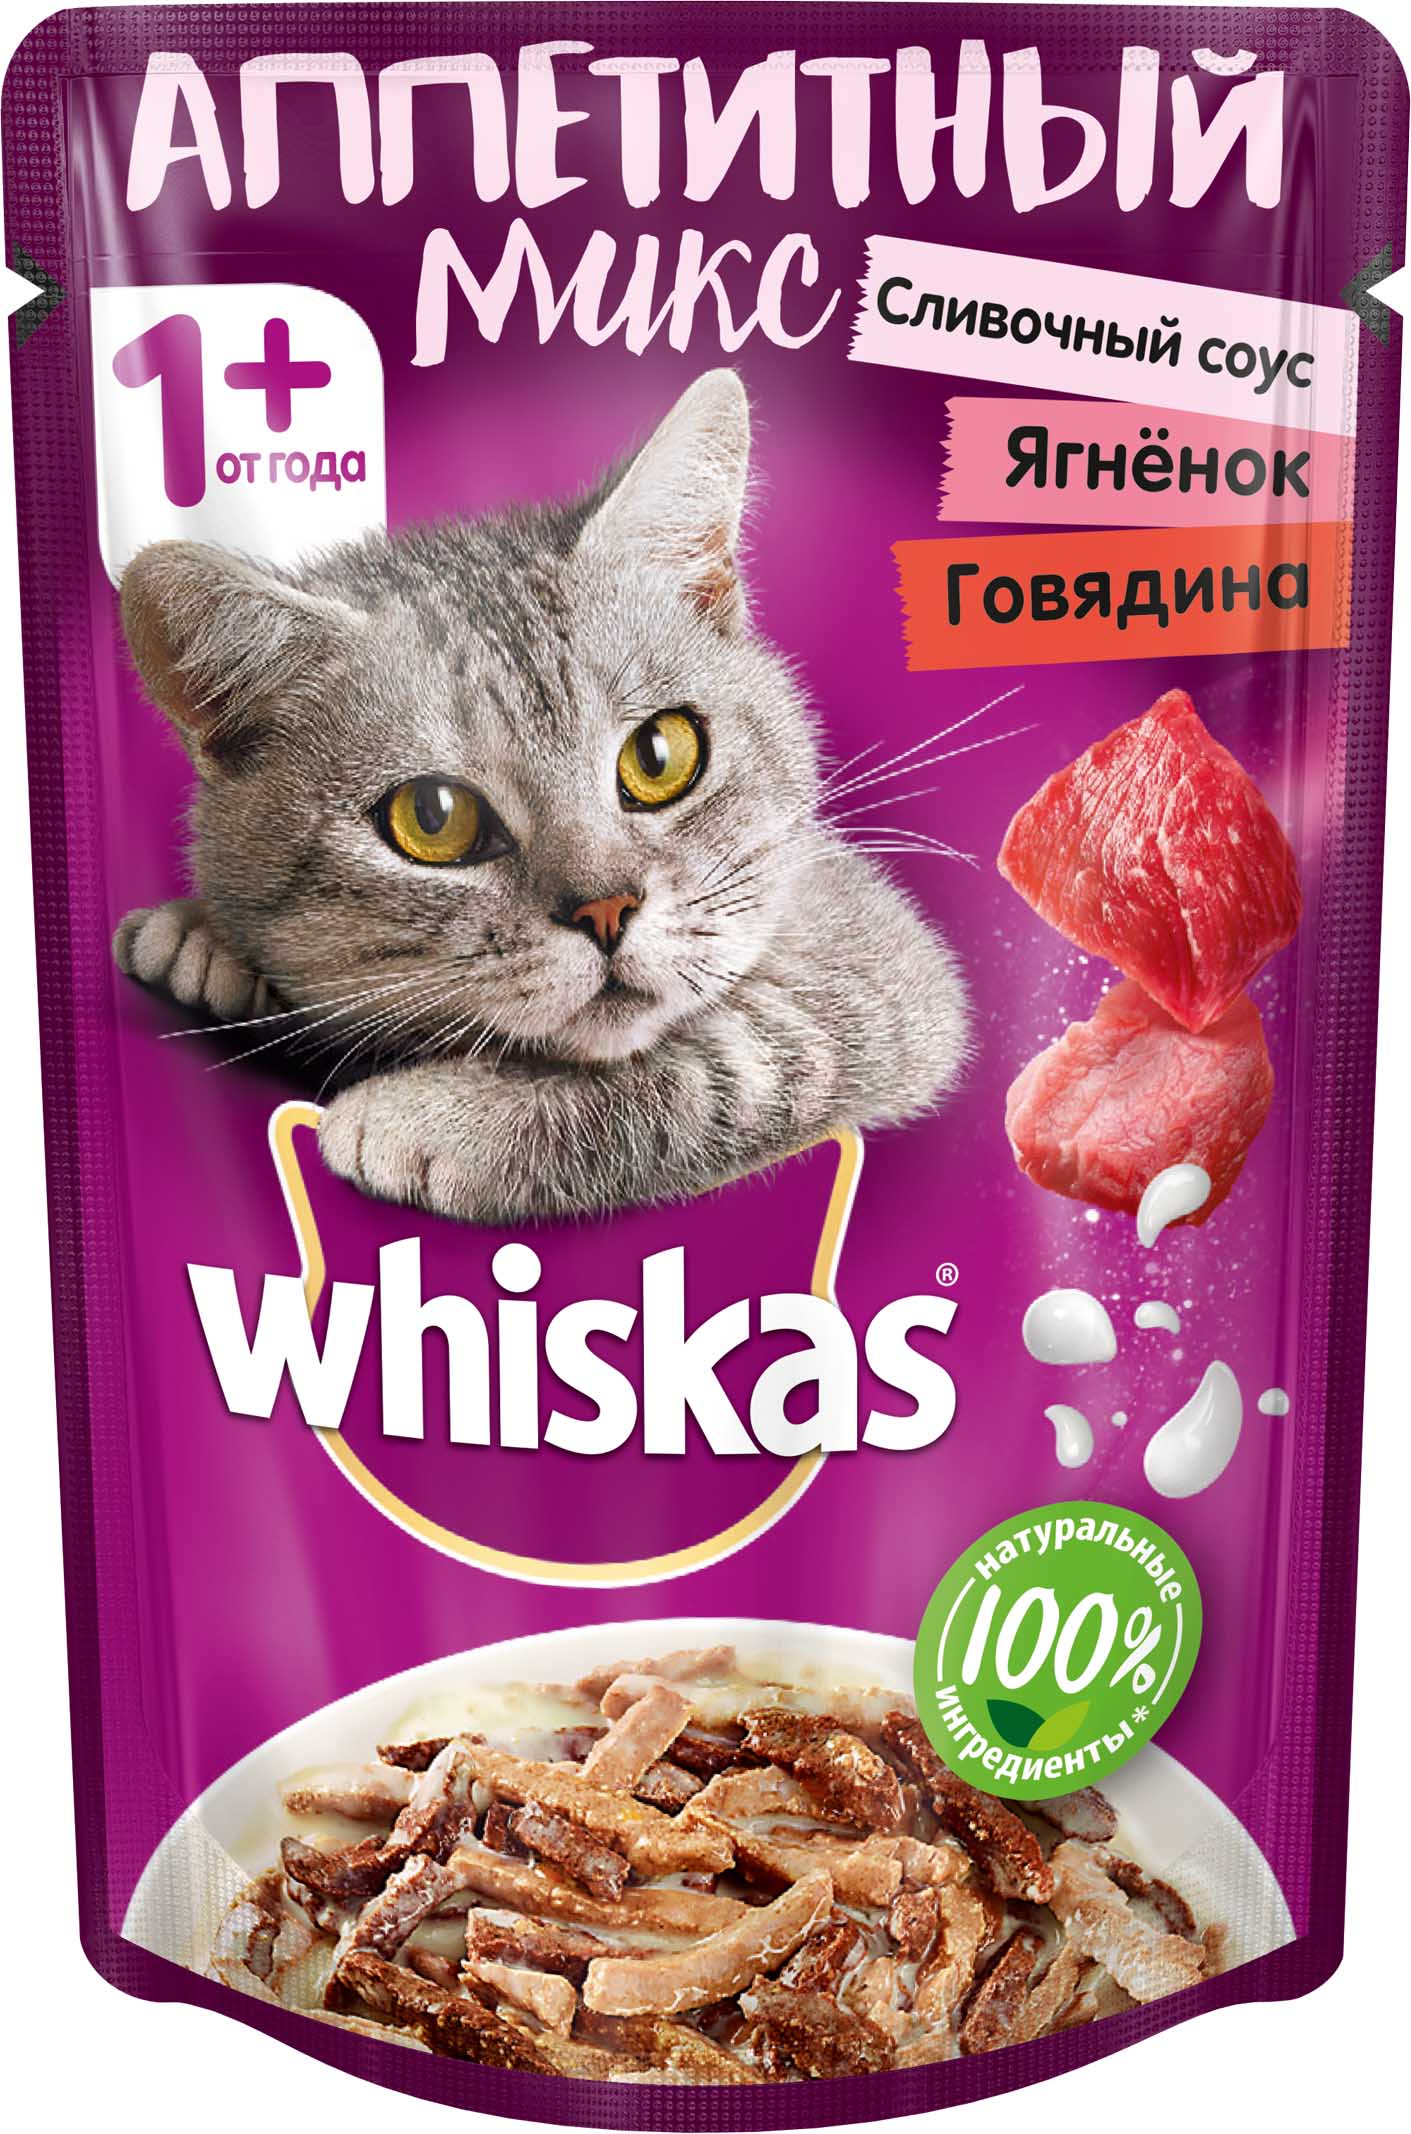 фото Влажный корм для кошек whiskas аппетитный микс, сливочный соус говядина, ягненок, 85г